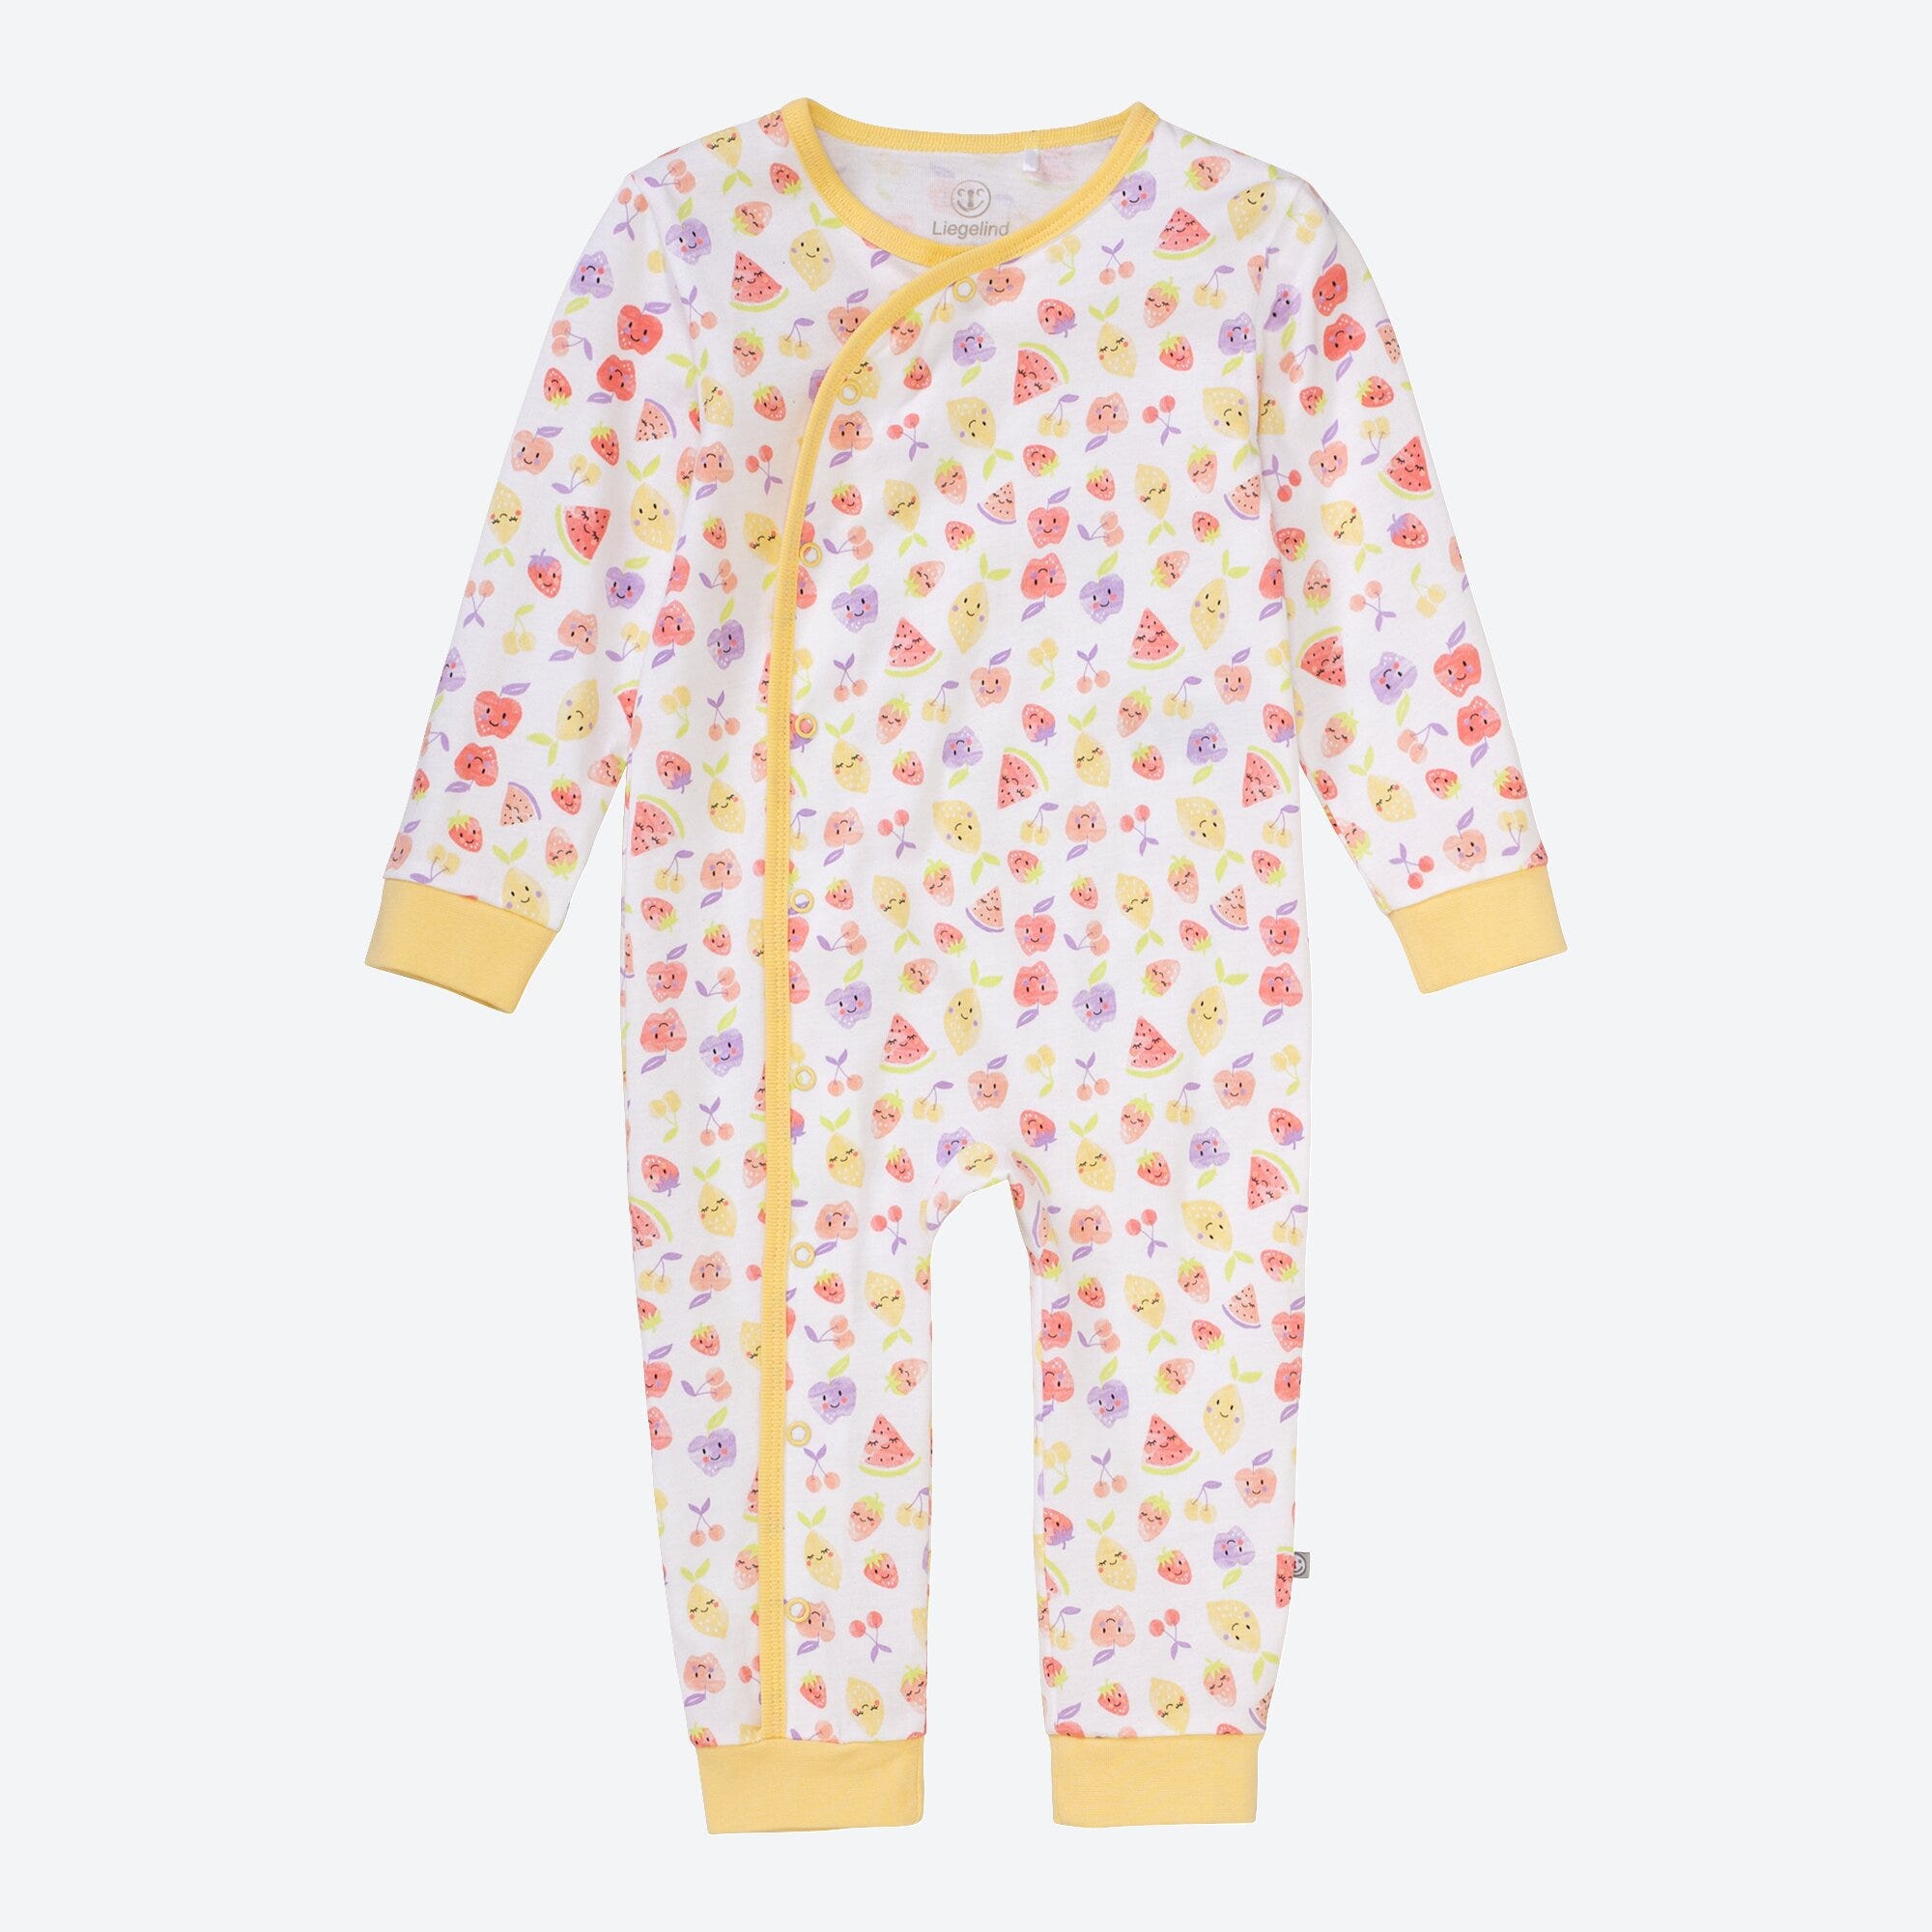 Baby-Mädchen-Schlafanzug mit Früchte-Muster